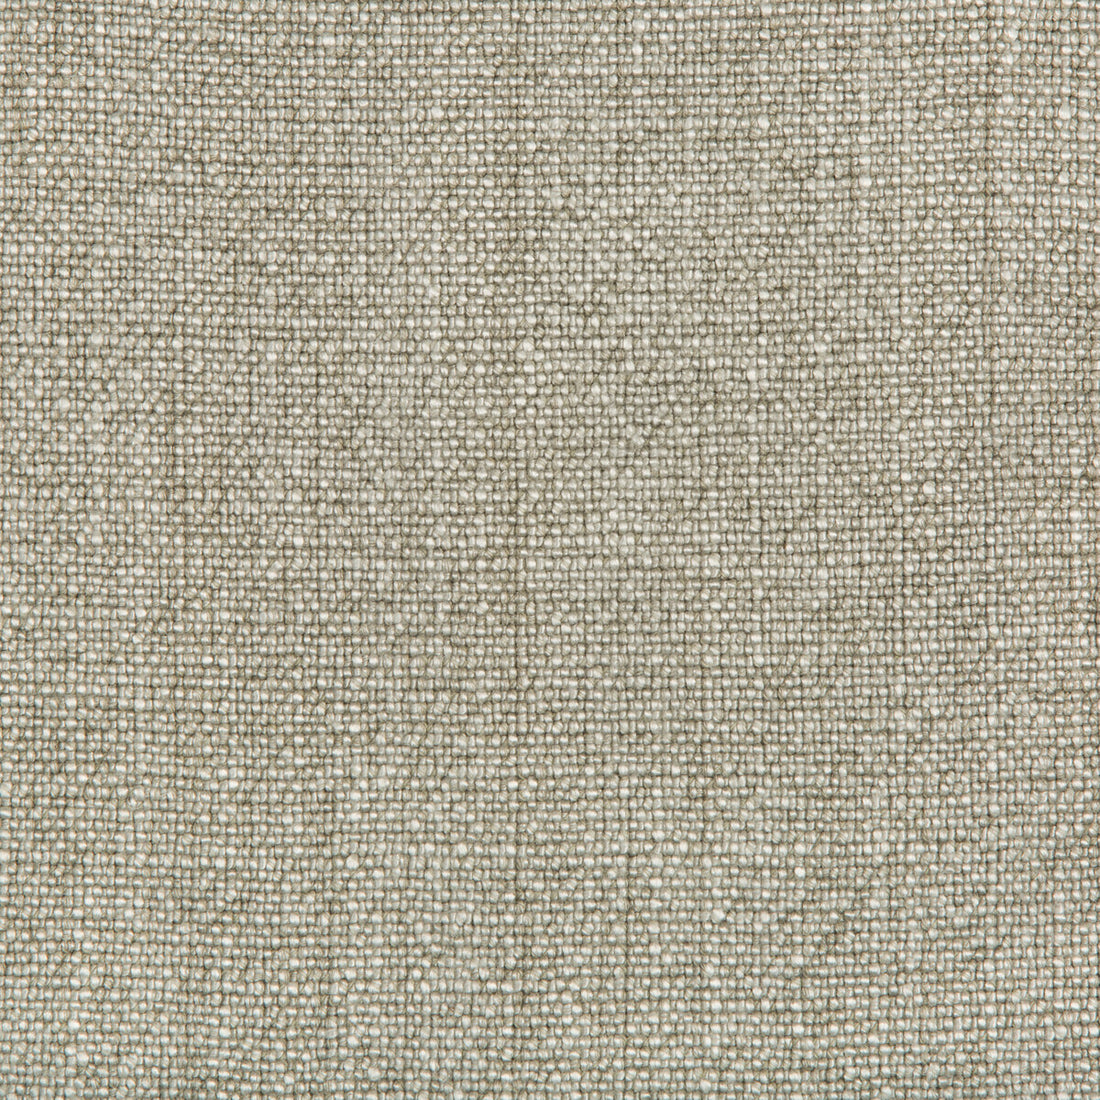 Kravet Basics fabric in 35189-1013 color - pattern 35189.1013.0 - by Kravet Basics